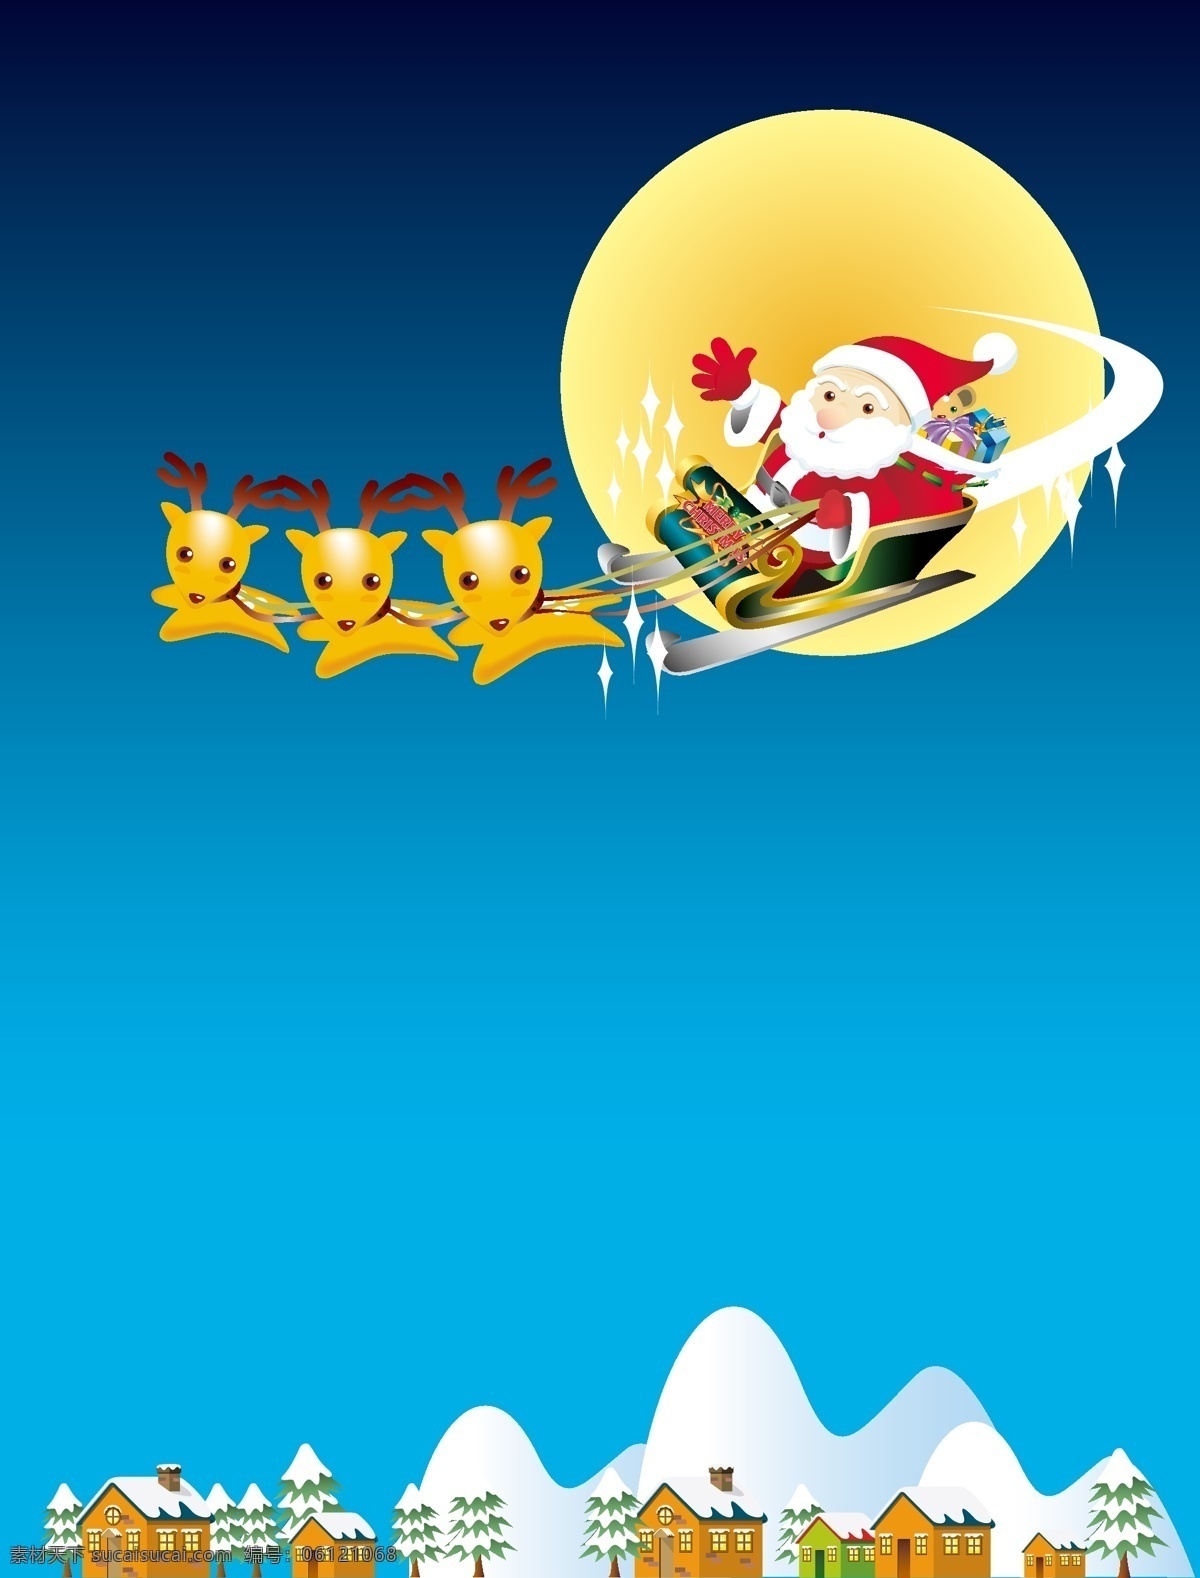 矢量 卡通 圣诞节 圣诞老人 雪橇 背景 蓝色 驯鹿 拉雪橇 海报 童趣 手绘